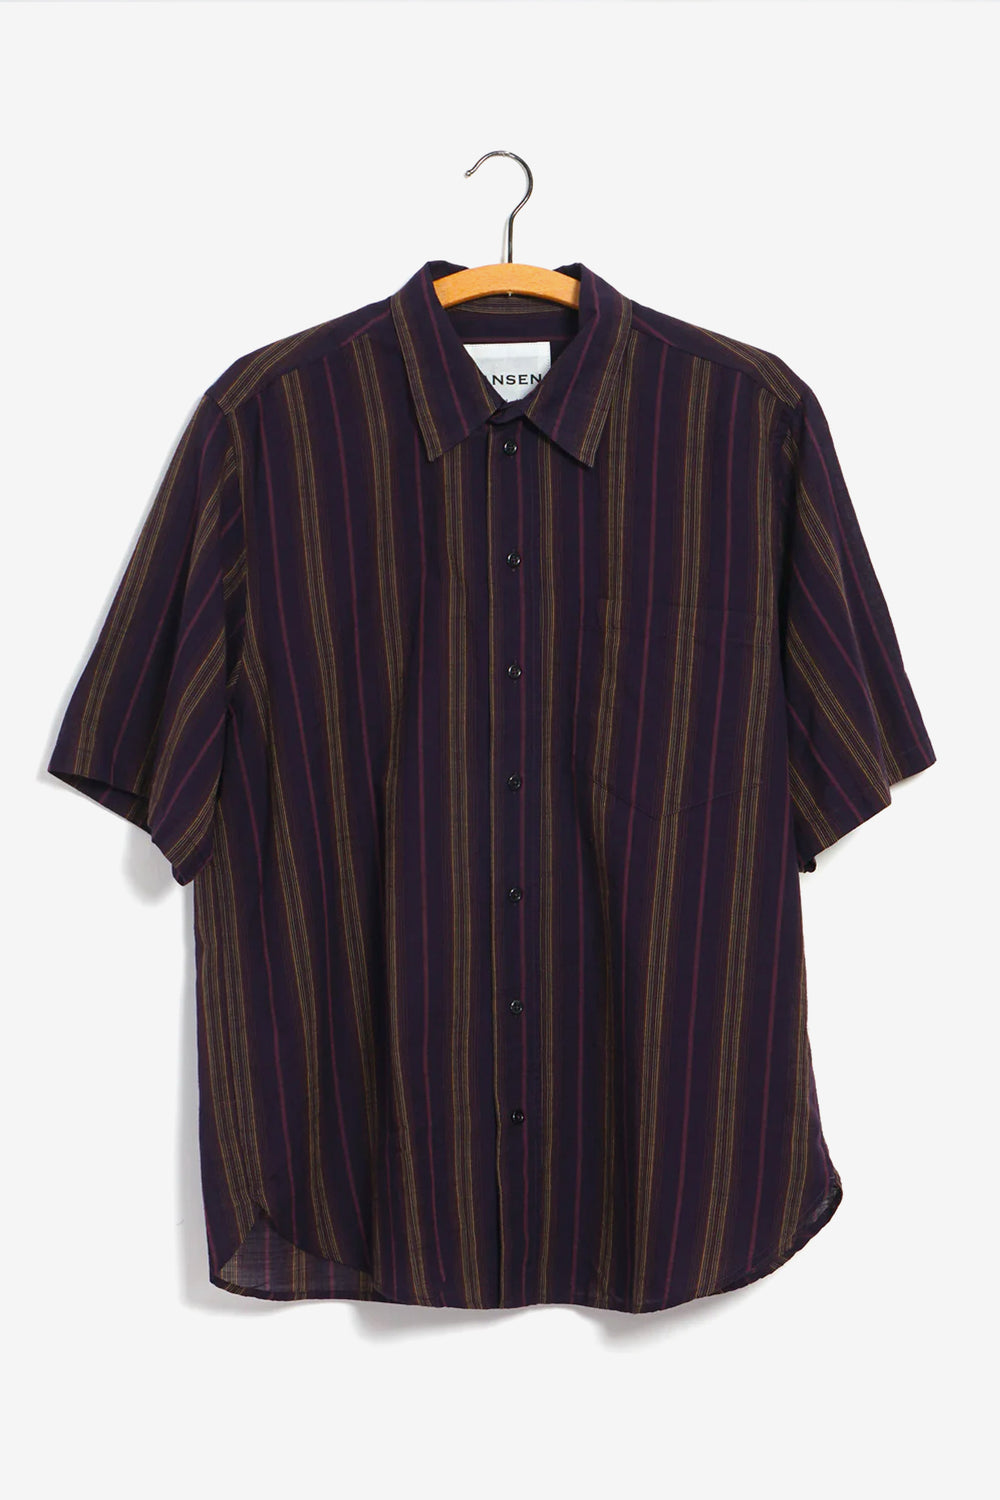 REIDAR Short Sleeve Shirt Purple Stripes